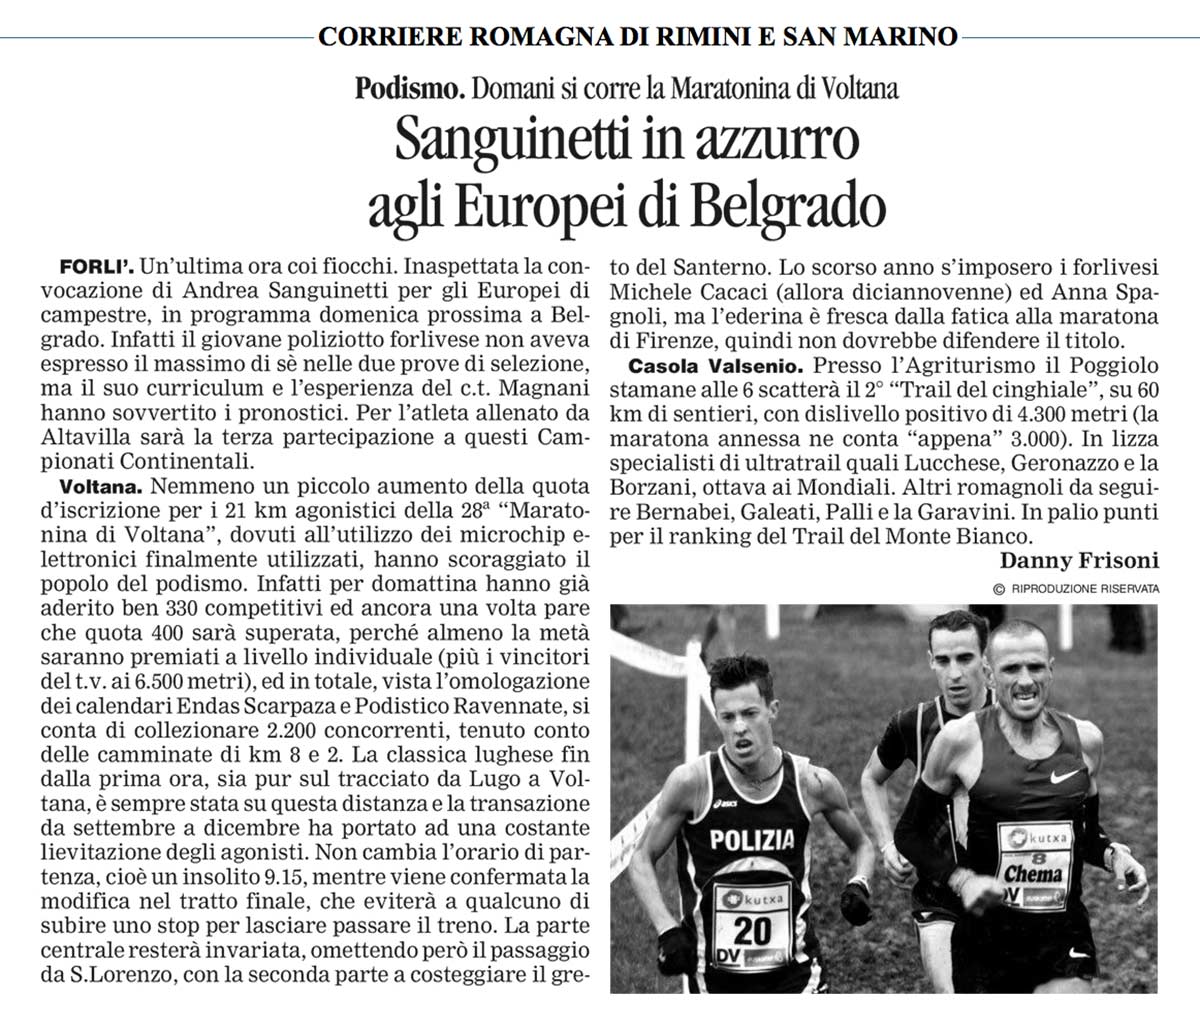 Andrea Sanguinetti - Fiamme Oro Atletica - Corriere Romagna 30-11-2013